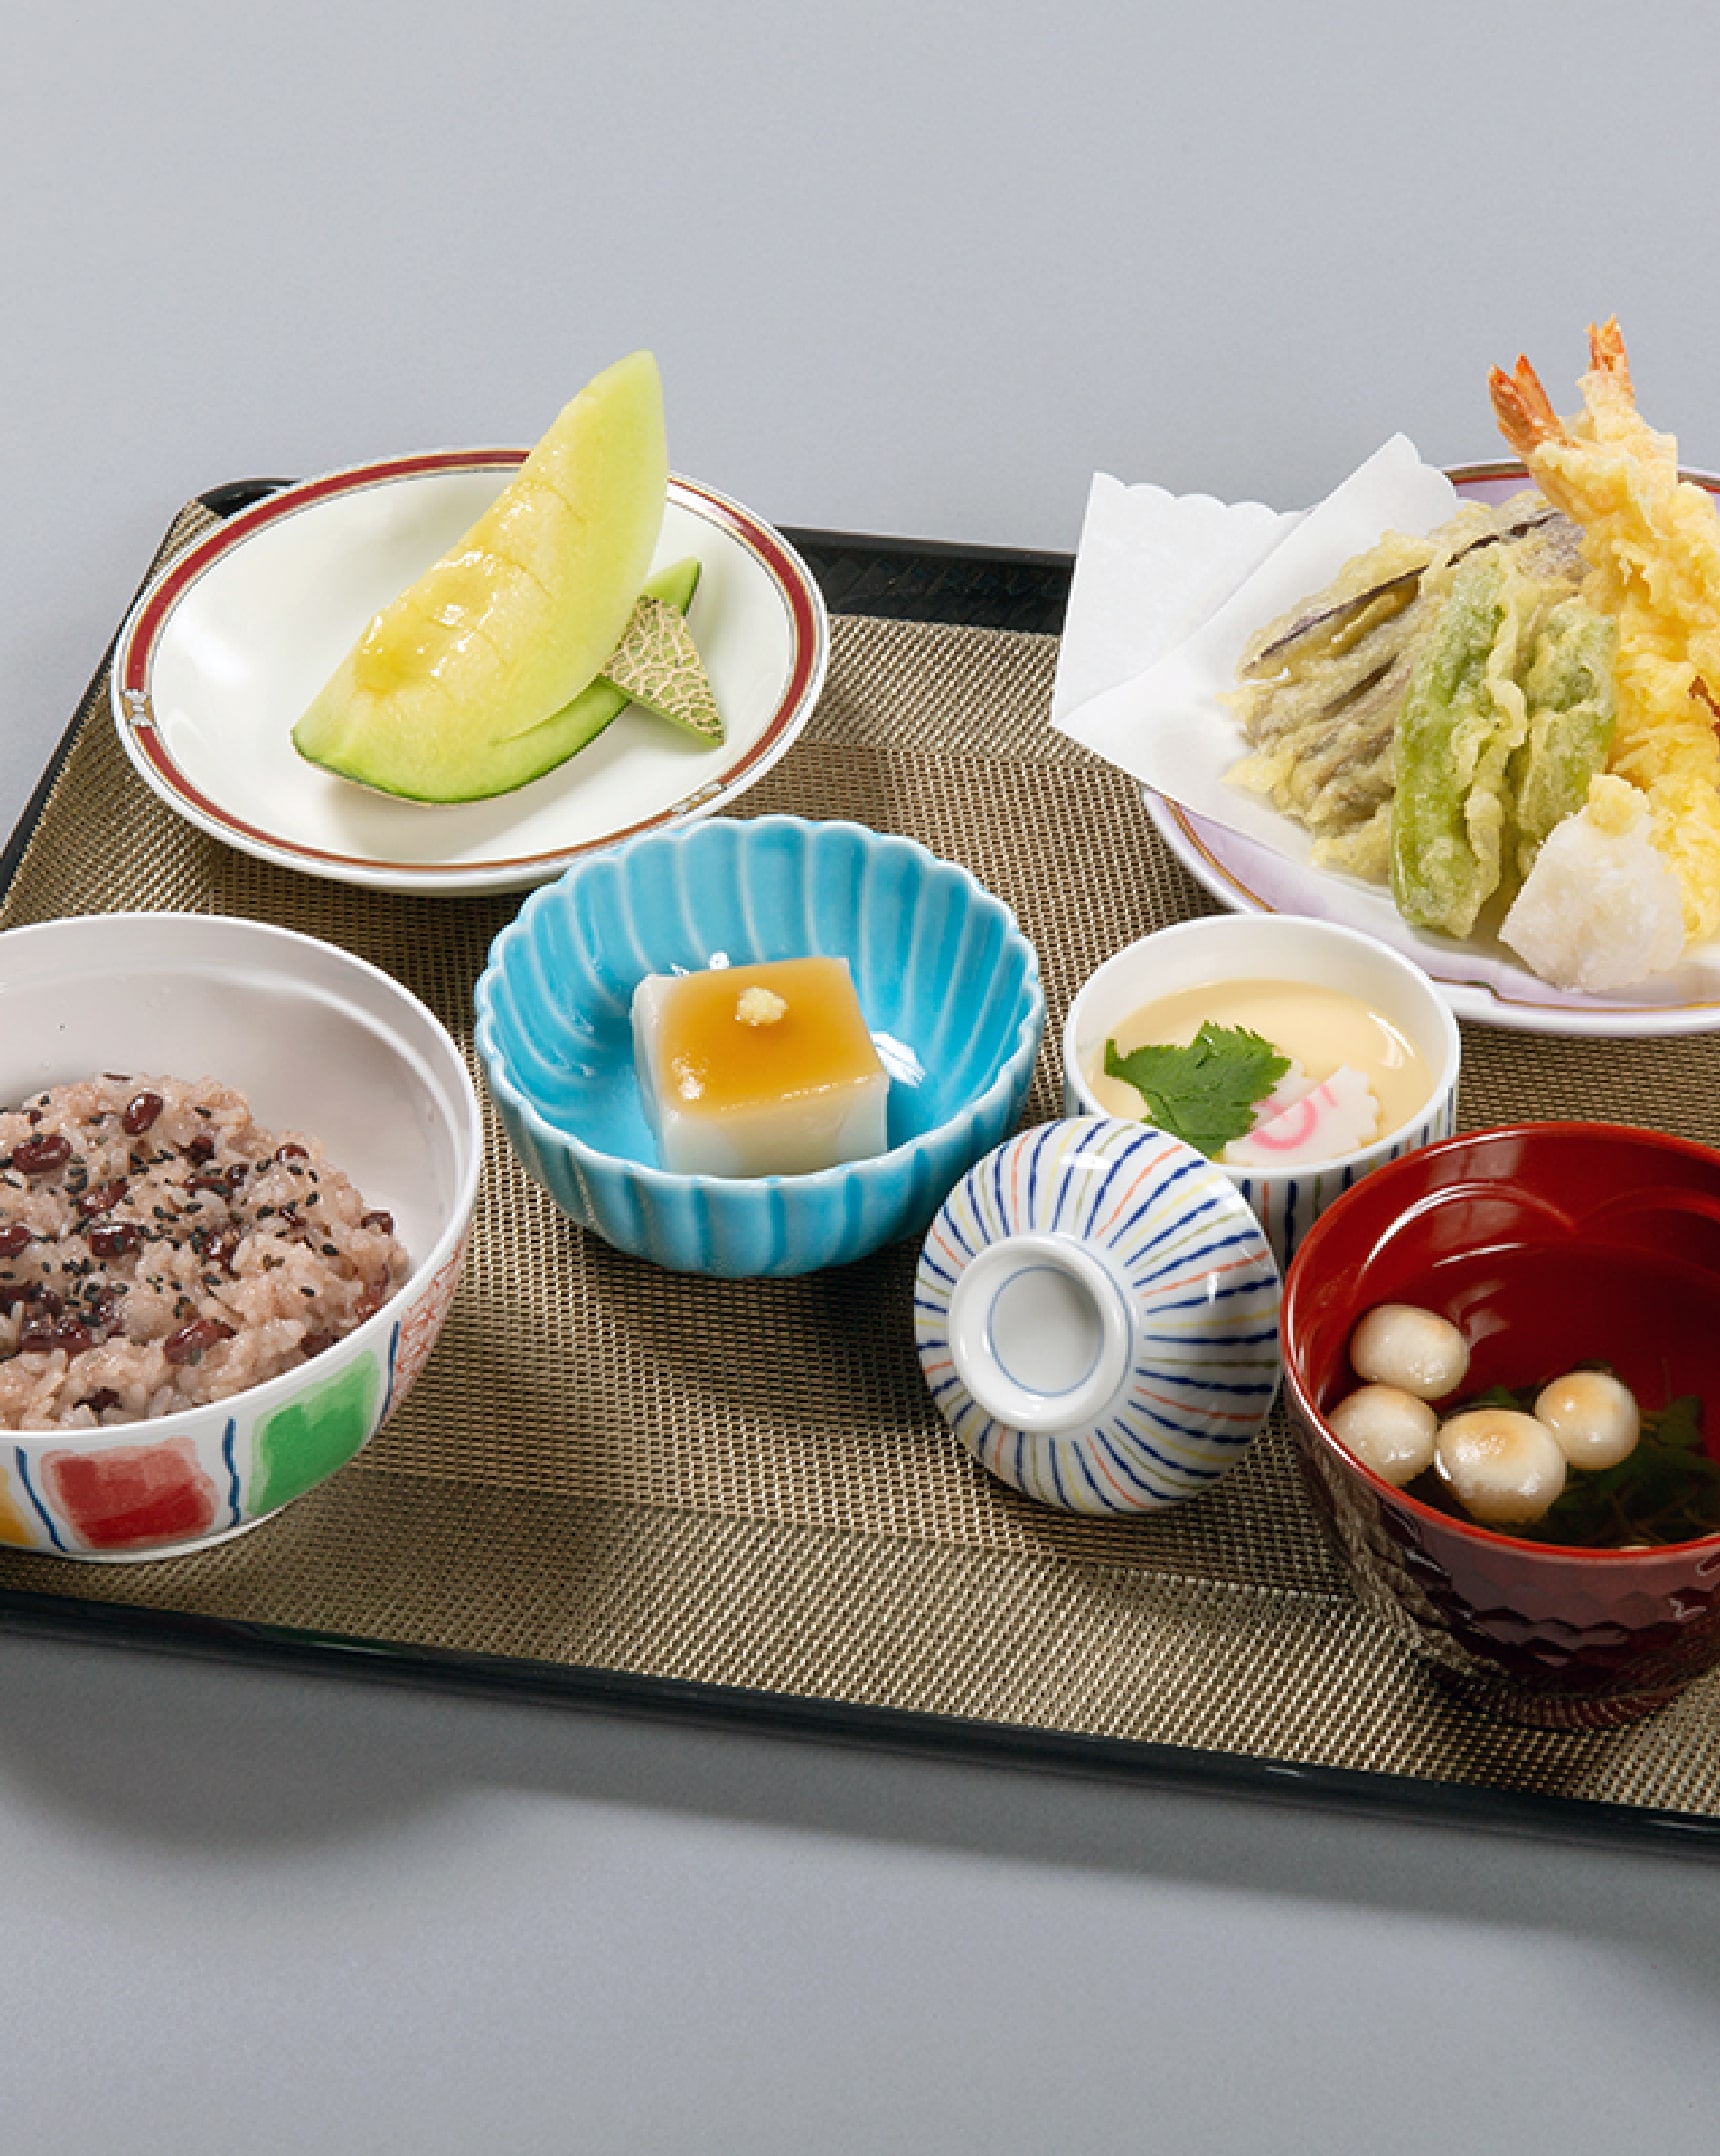 心を温める「食」の提供をISIMOTO RECRUIT SITE